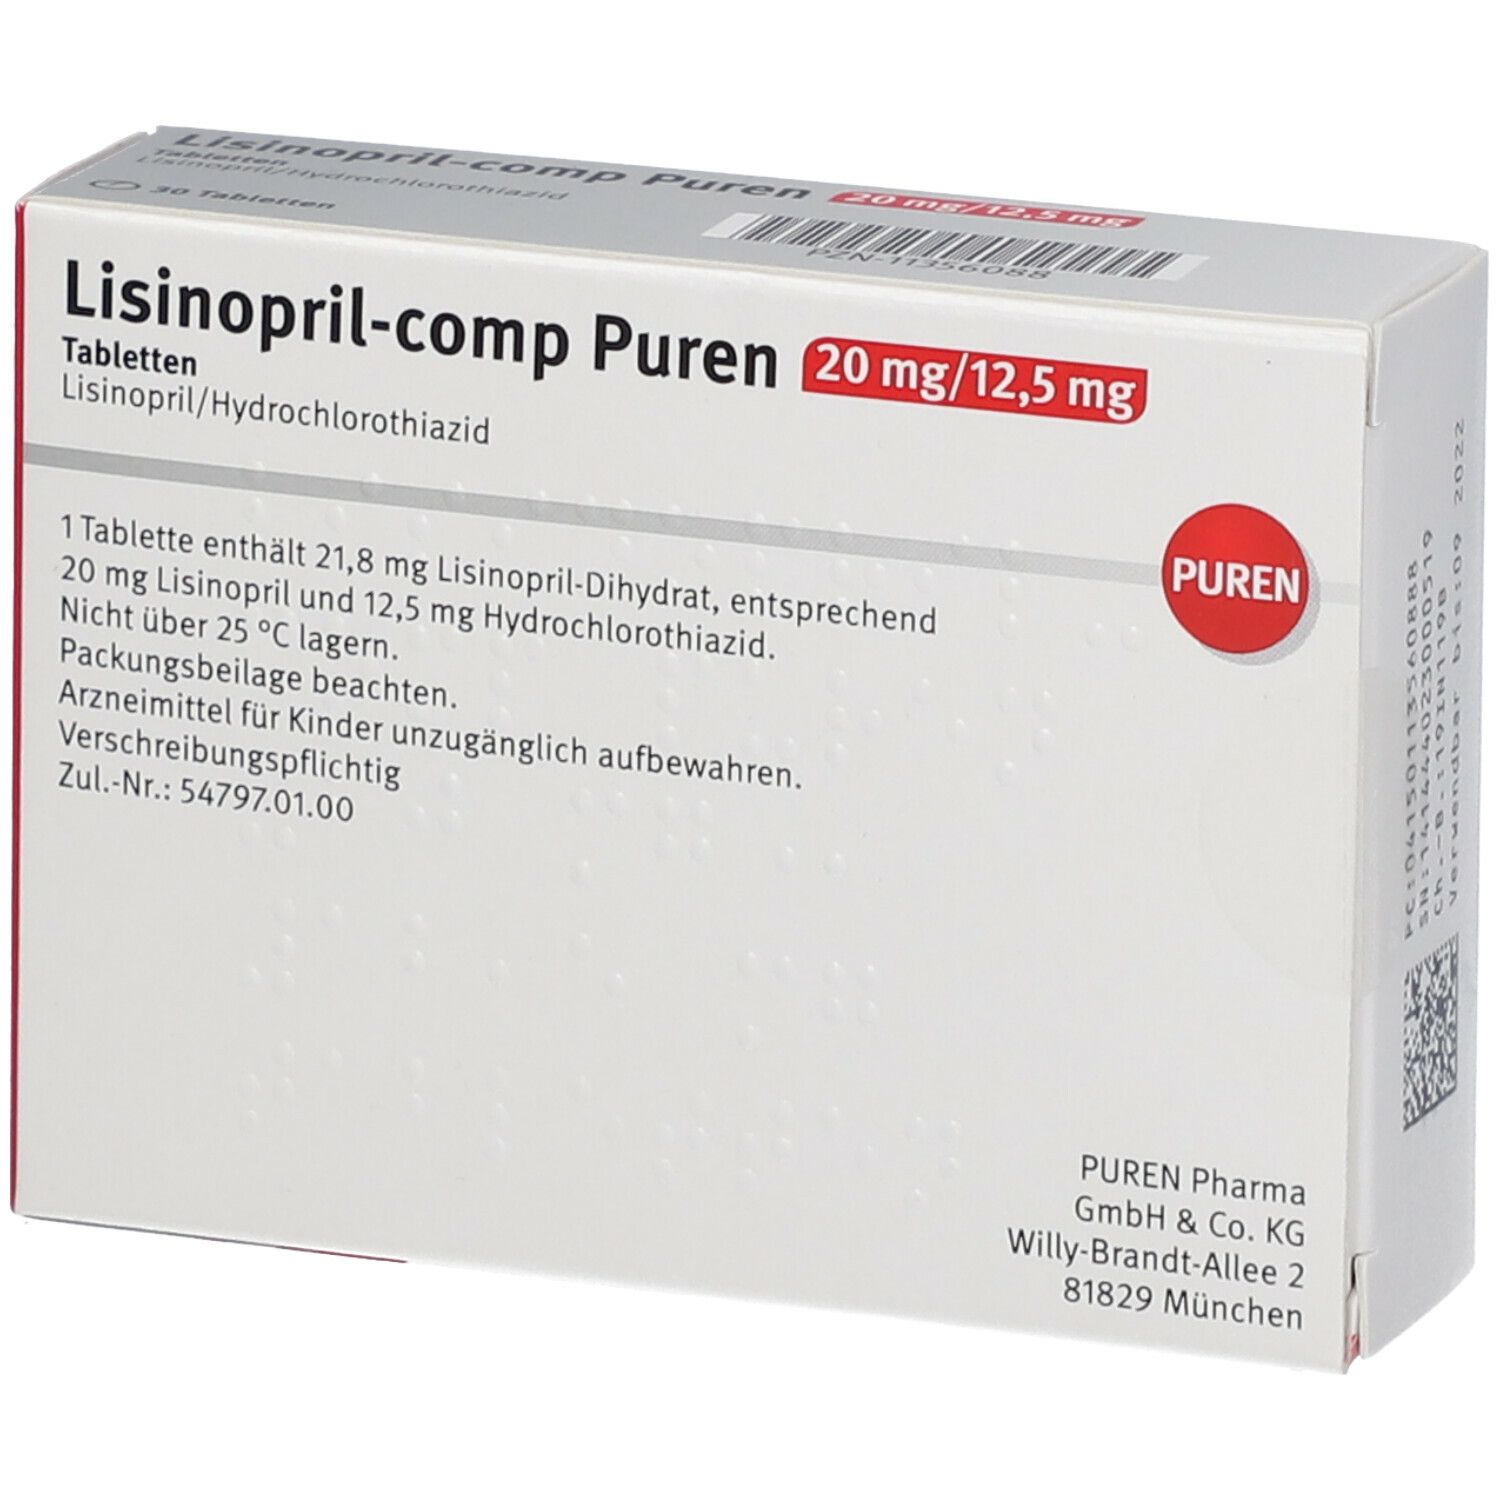 Lisinopril-comp PUREN 20 mg/12,5 mg